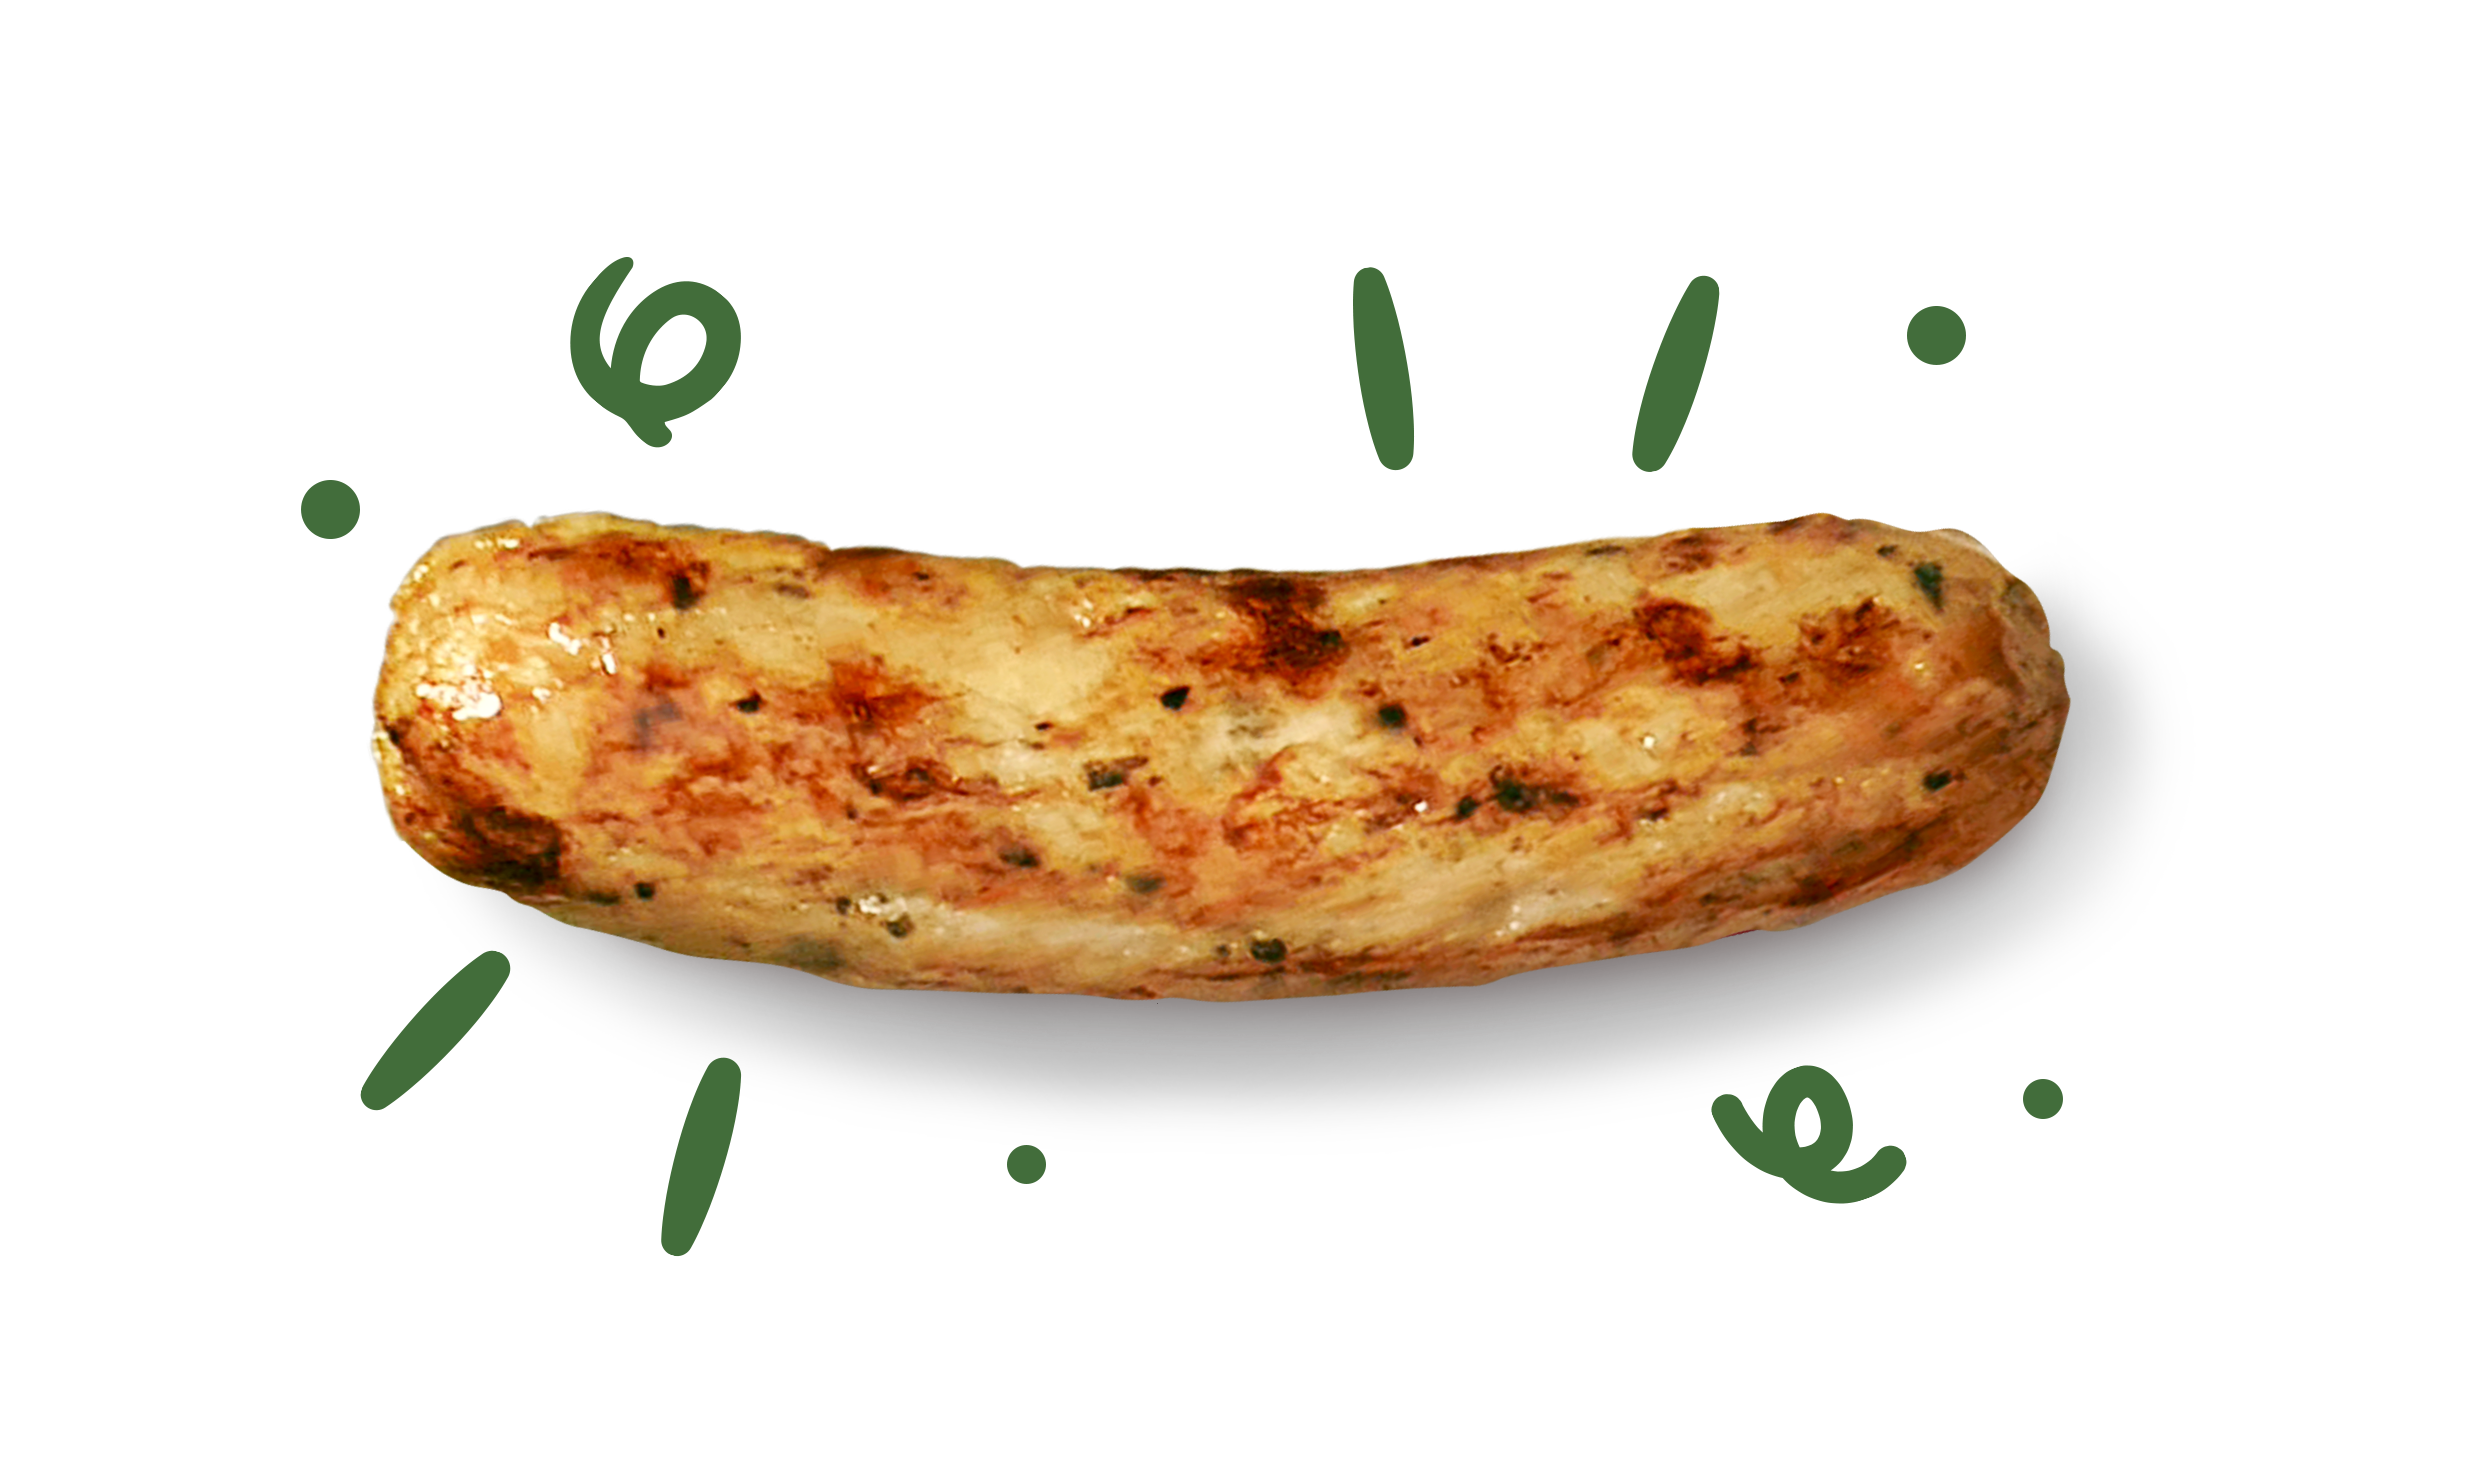 A juicy sausage.